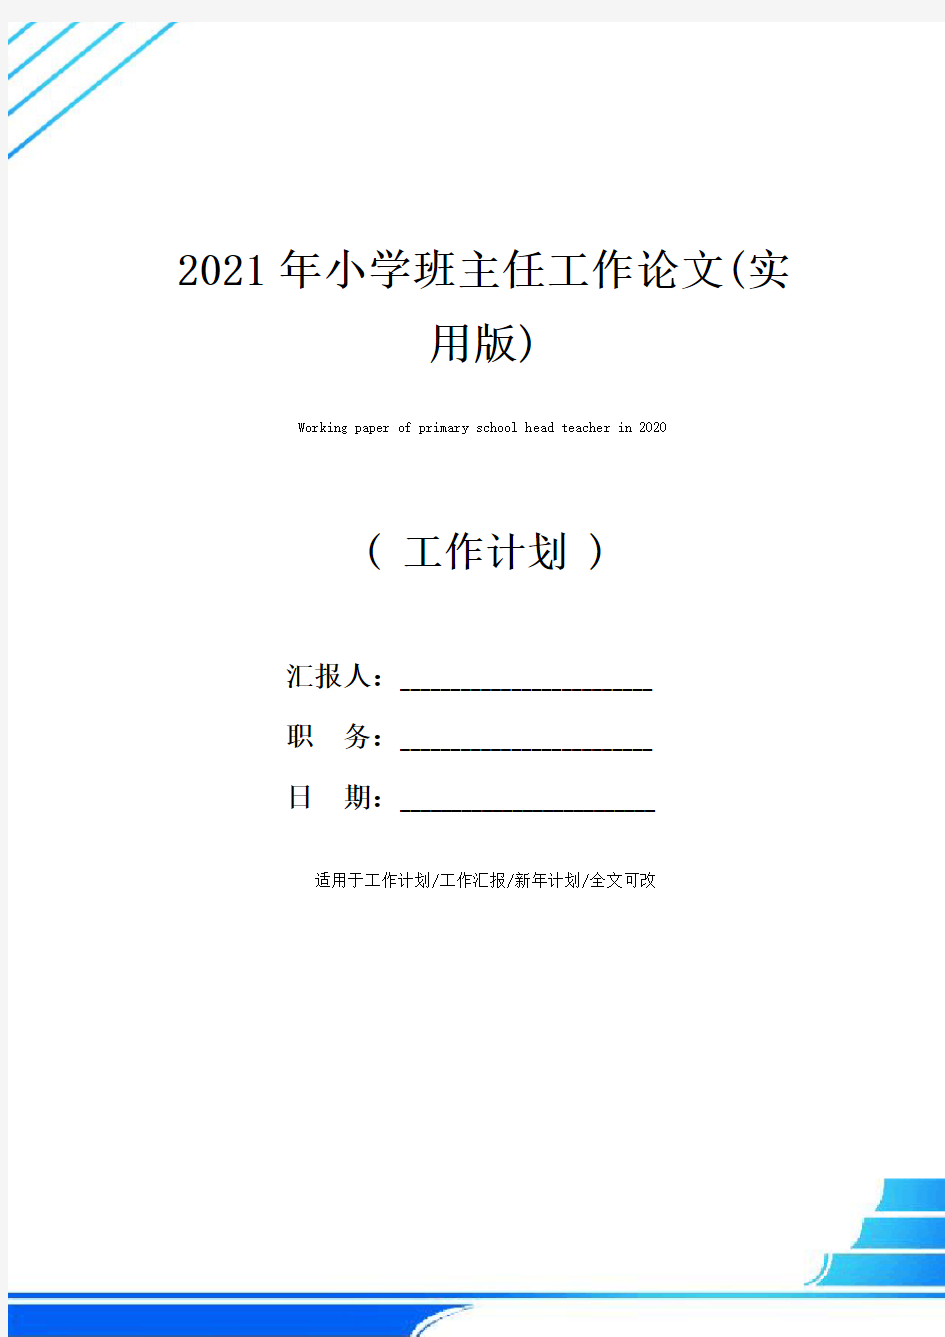 2021年小学班主任工作论文(实用版)